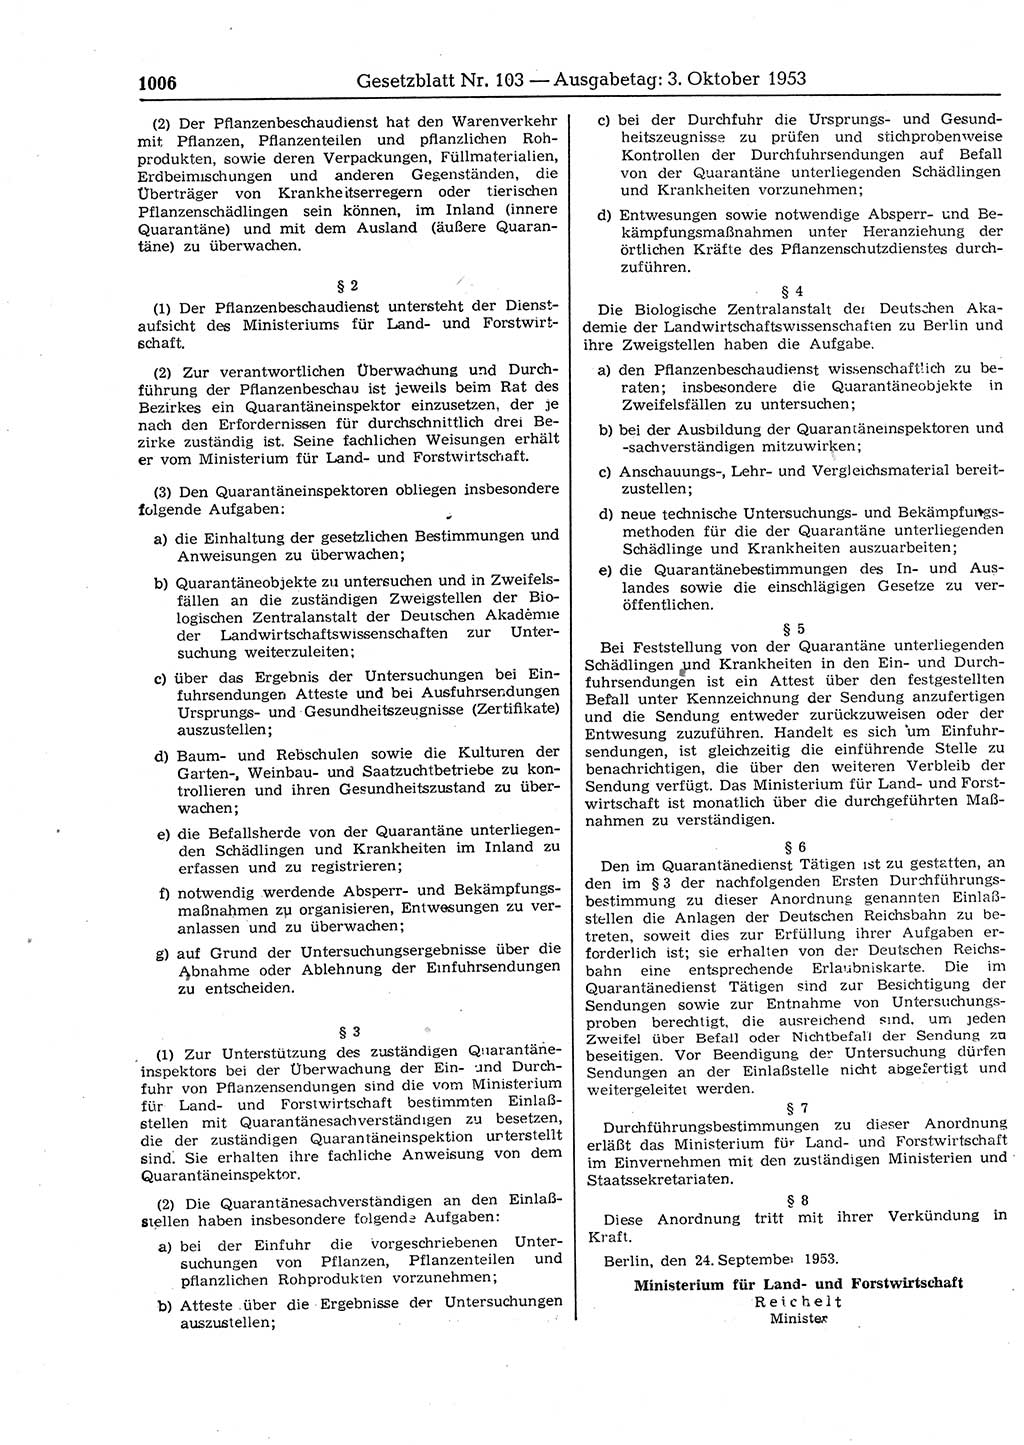 Gesetzblatt (GBl.) der Deutschen Demokratischen Republik (DDR) 1953, Seite 1006 (GBl. DDR 1953, S. 1006)